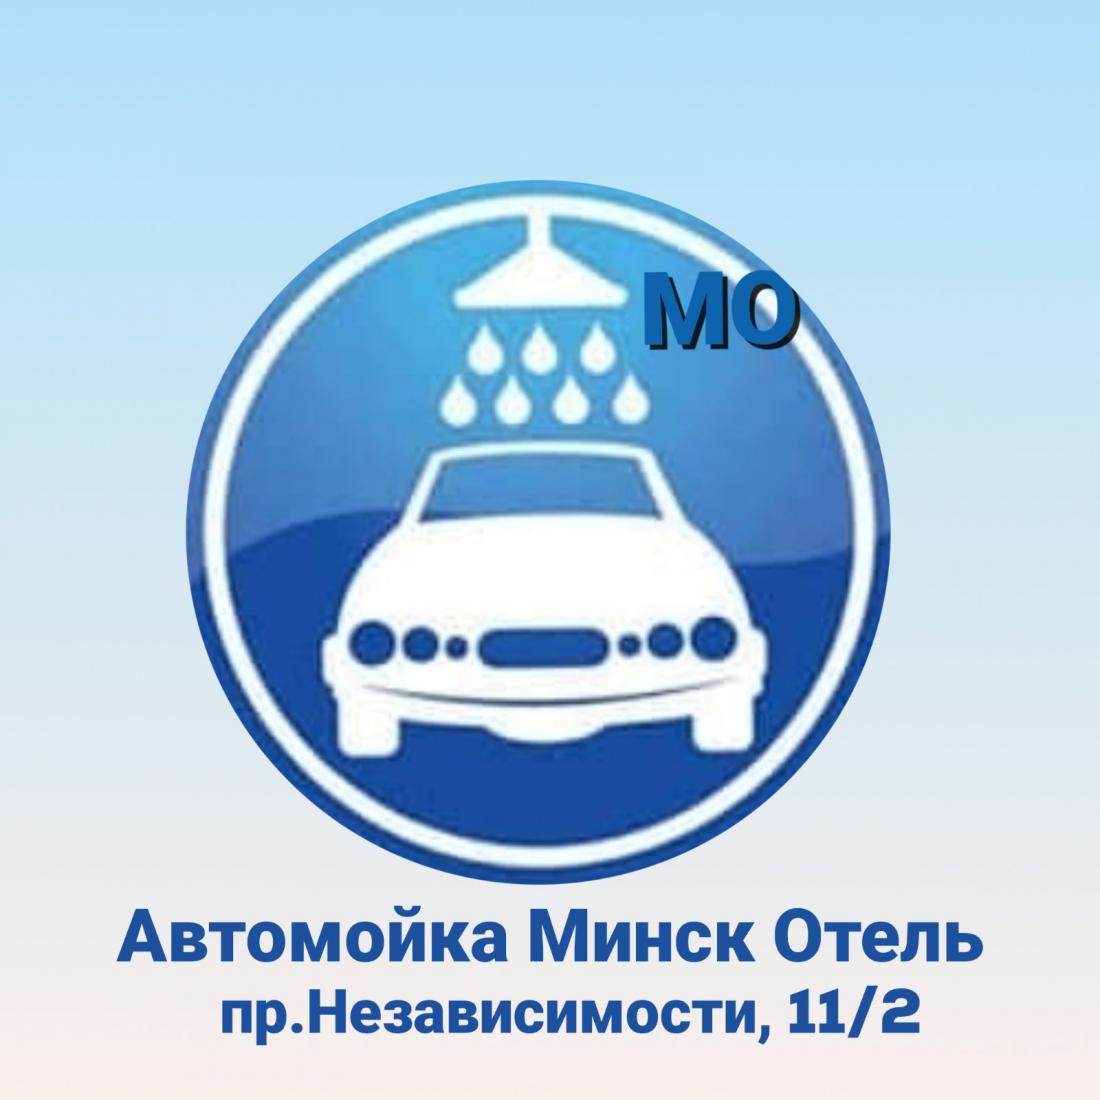 Химчистка, полировка автомобиля со скидкой 50% на автомойке "Минск Отель"